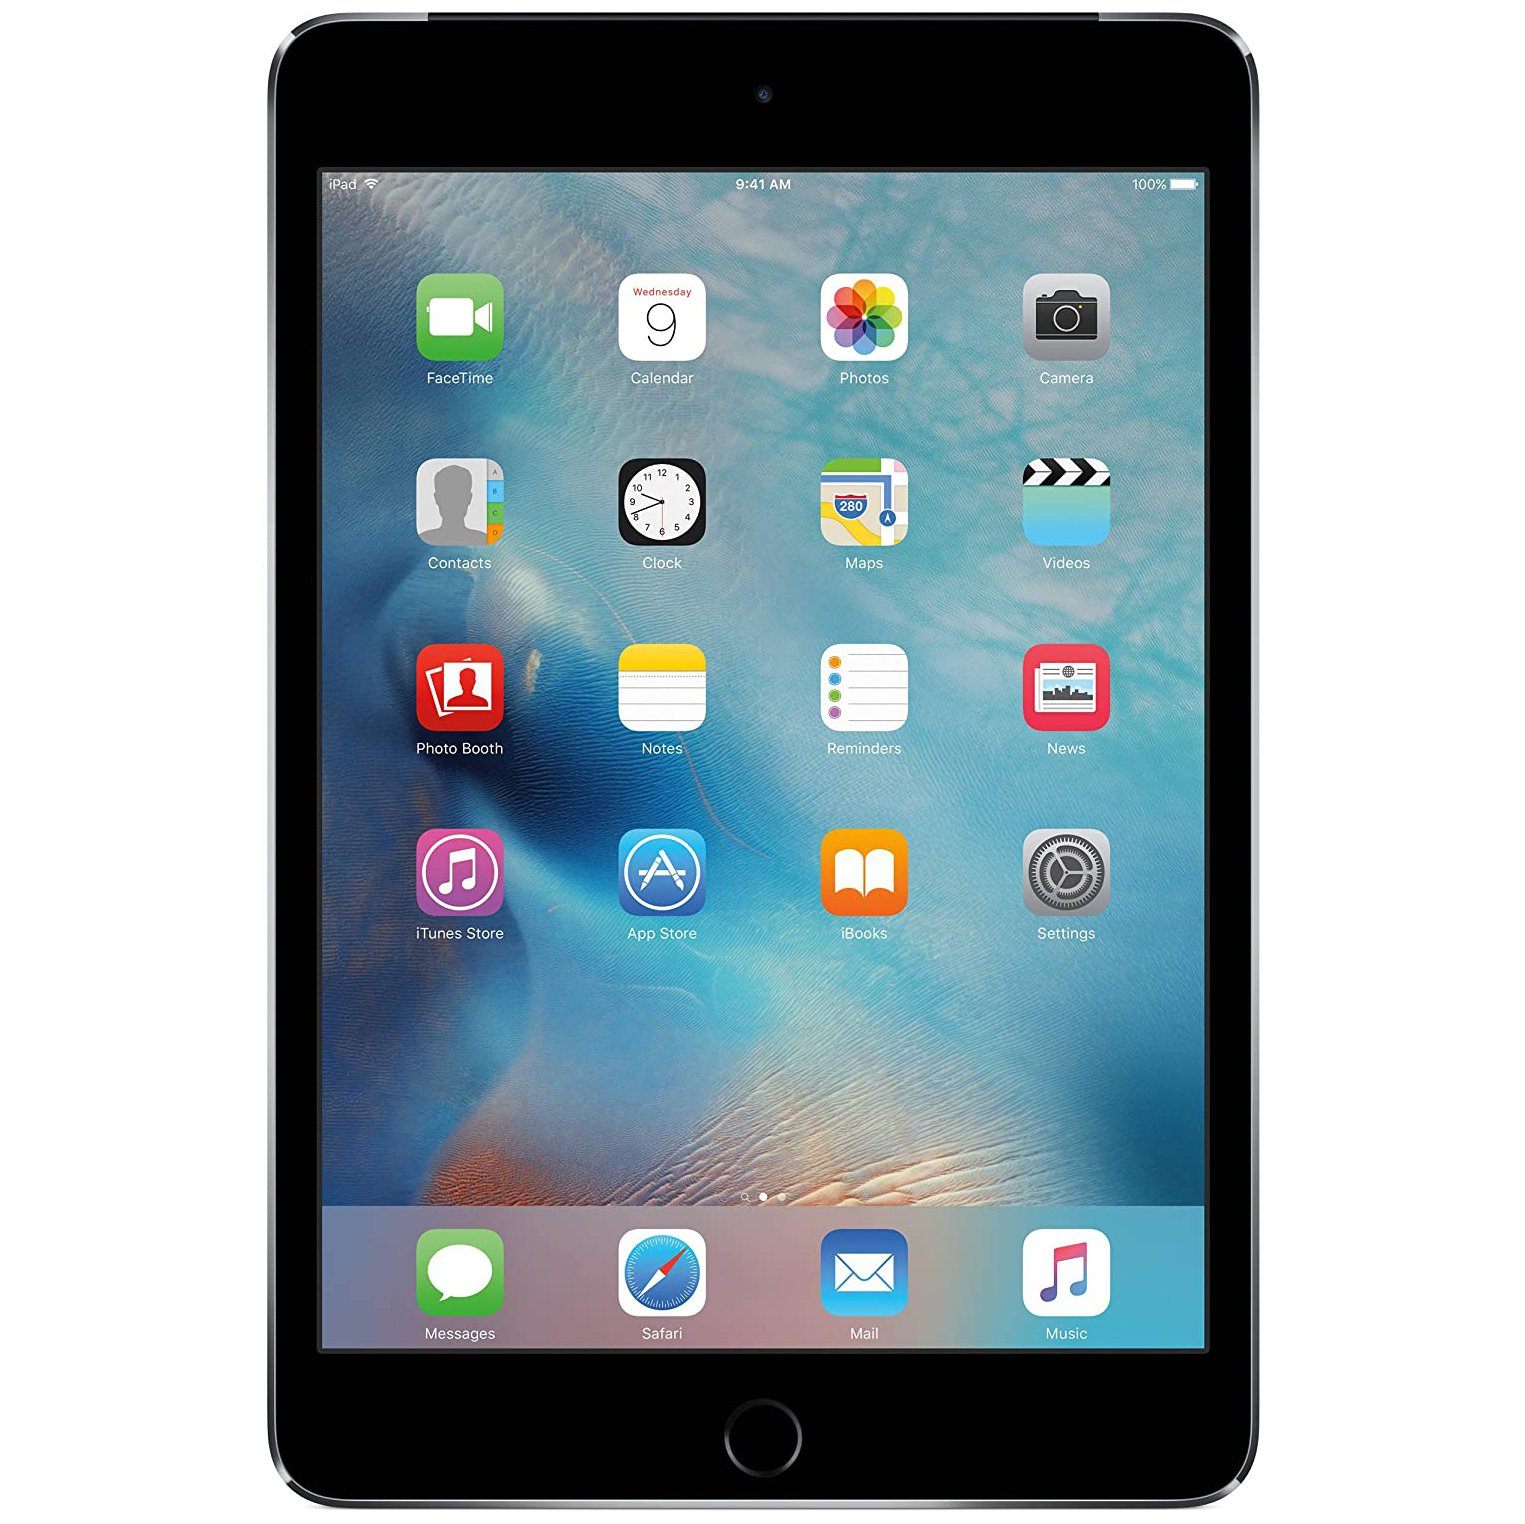 Apple iPad Mini 4, 64GB with Retina Display, Wi-Fi + Cellular - Space Gray